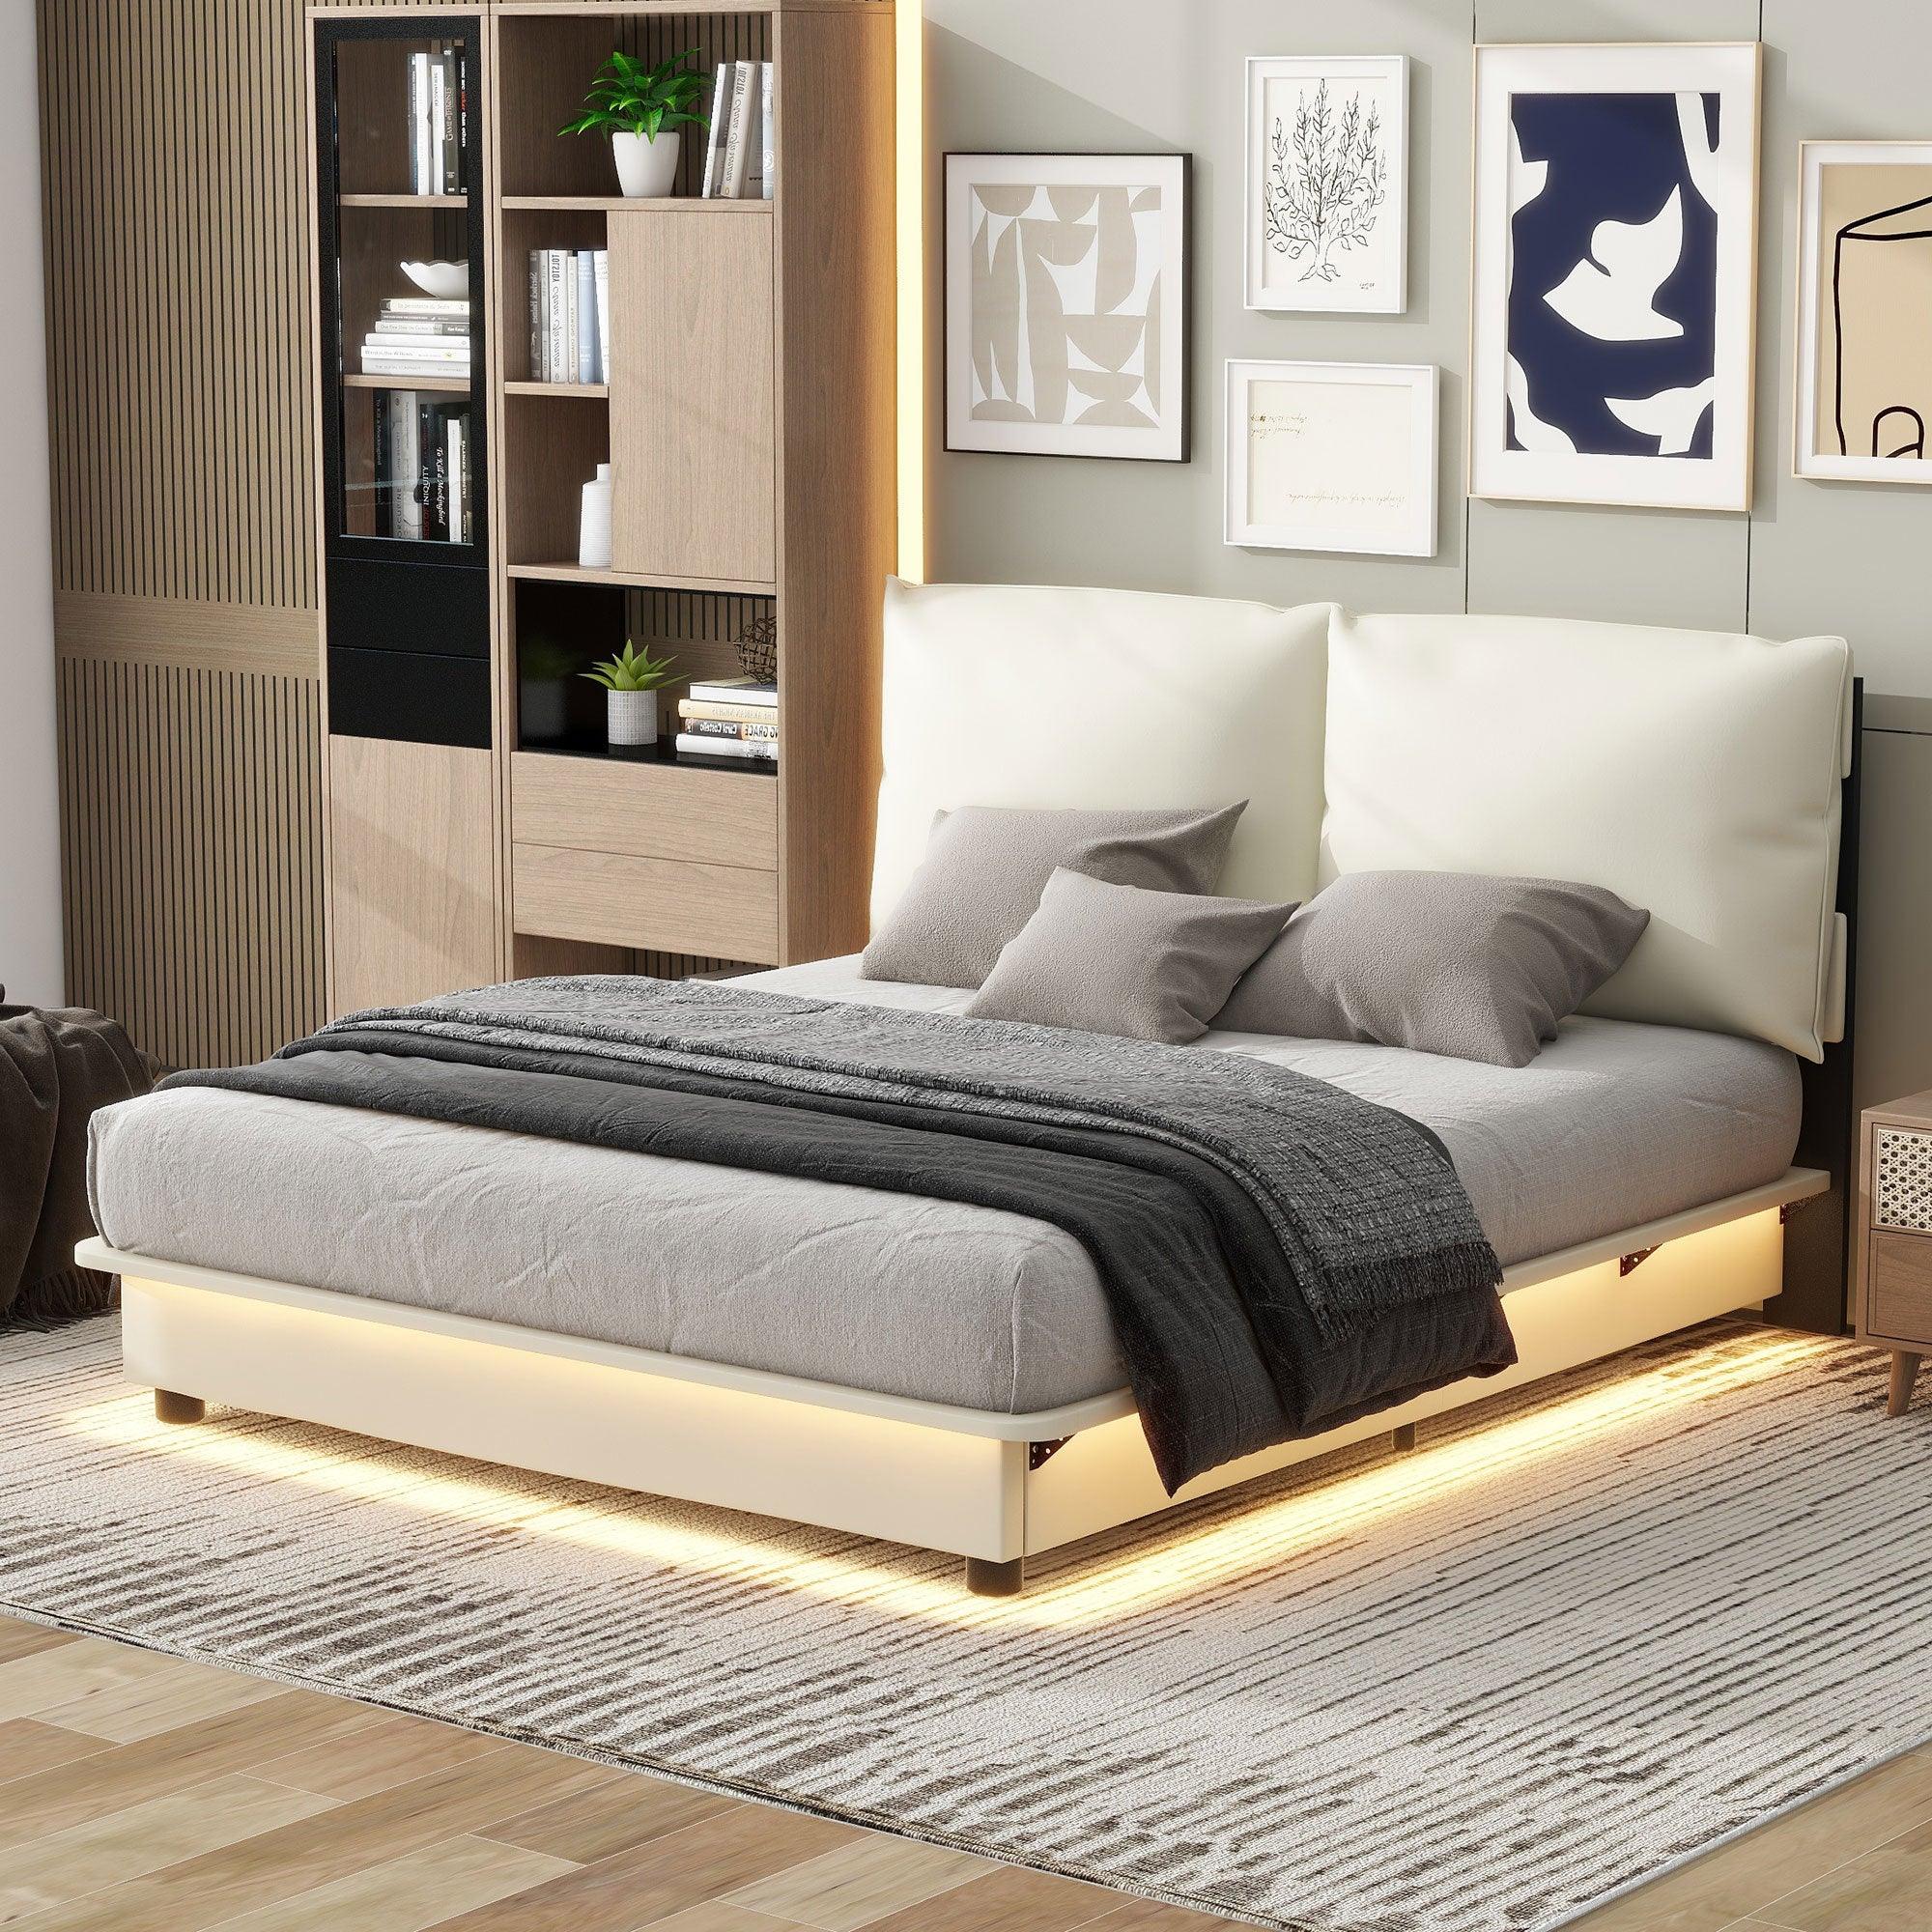 🆓🚛 Queen Size Upholstered Platform Bed With Sensor Light & Ergonomic Design Backrests, White